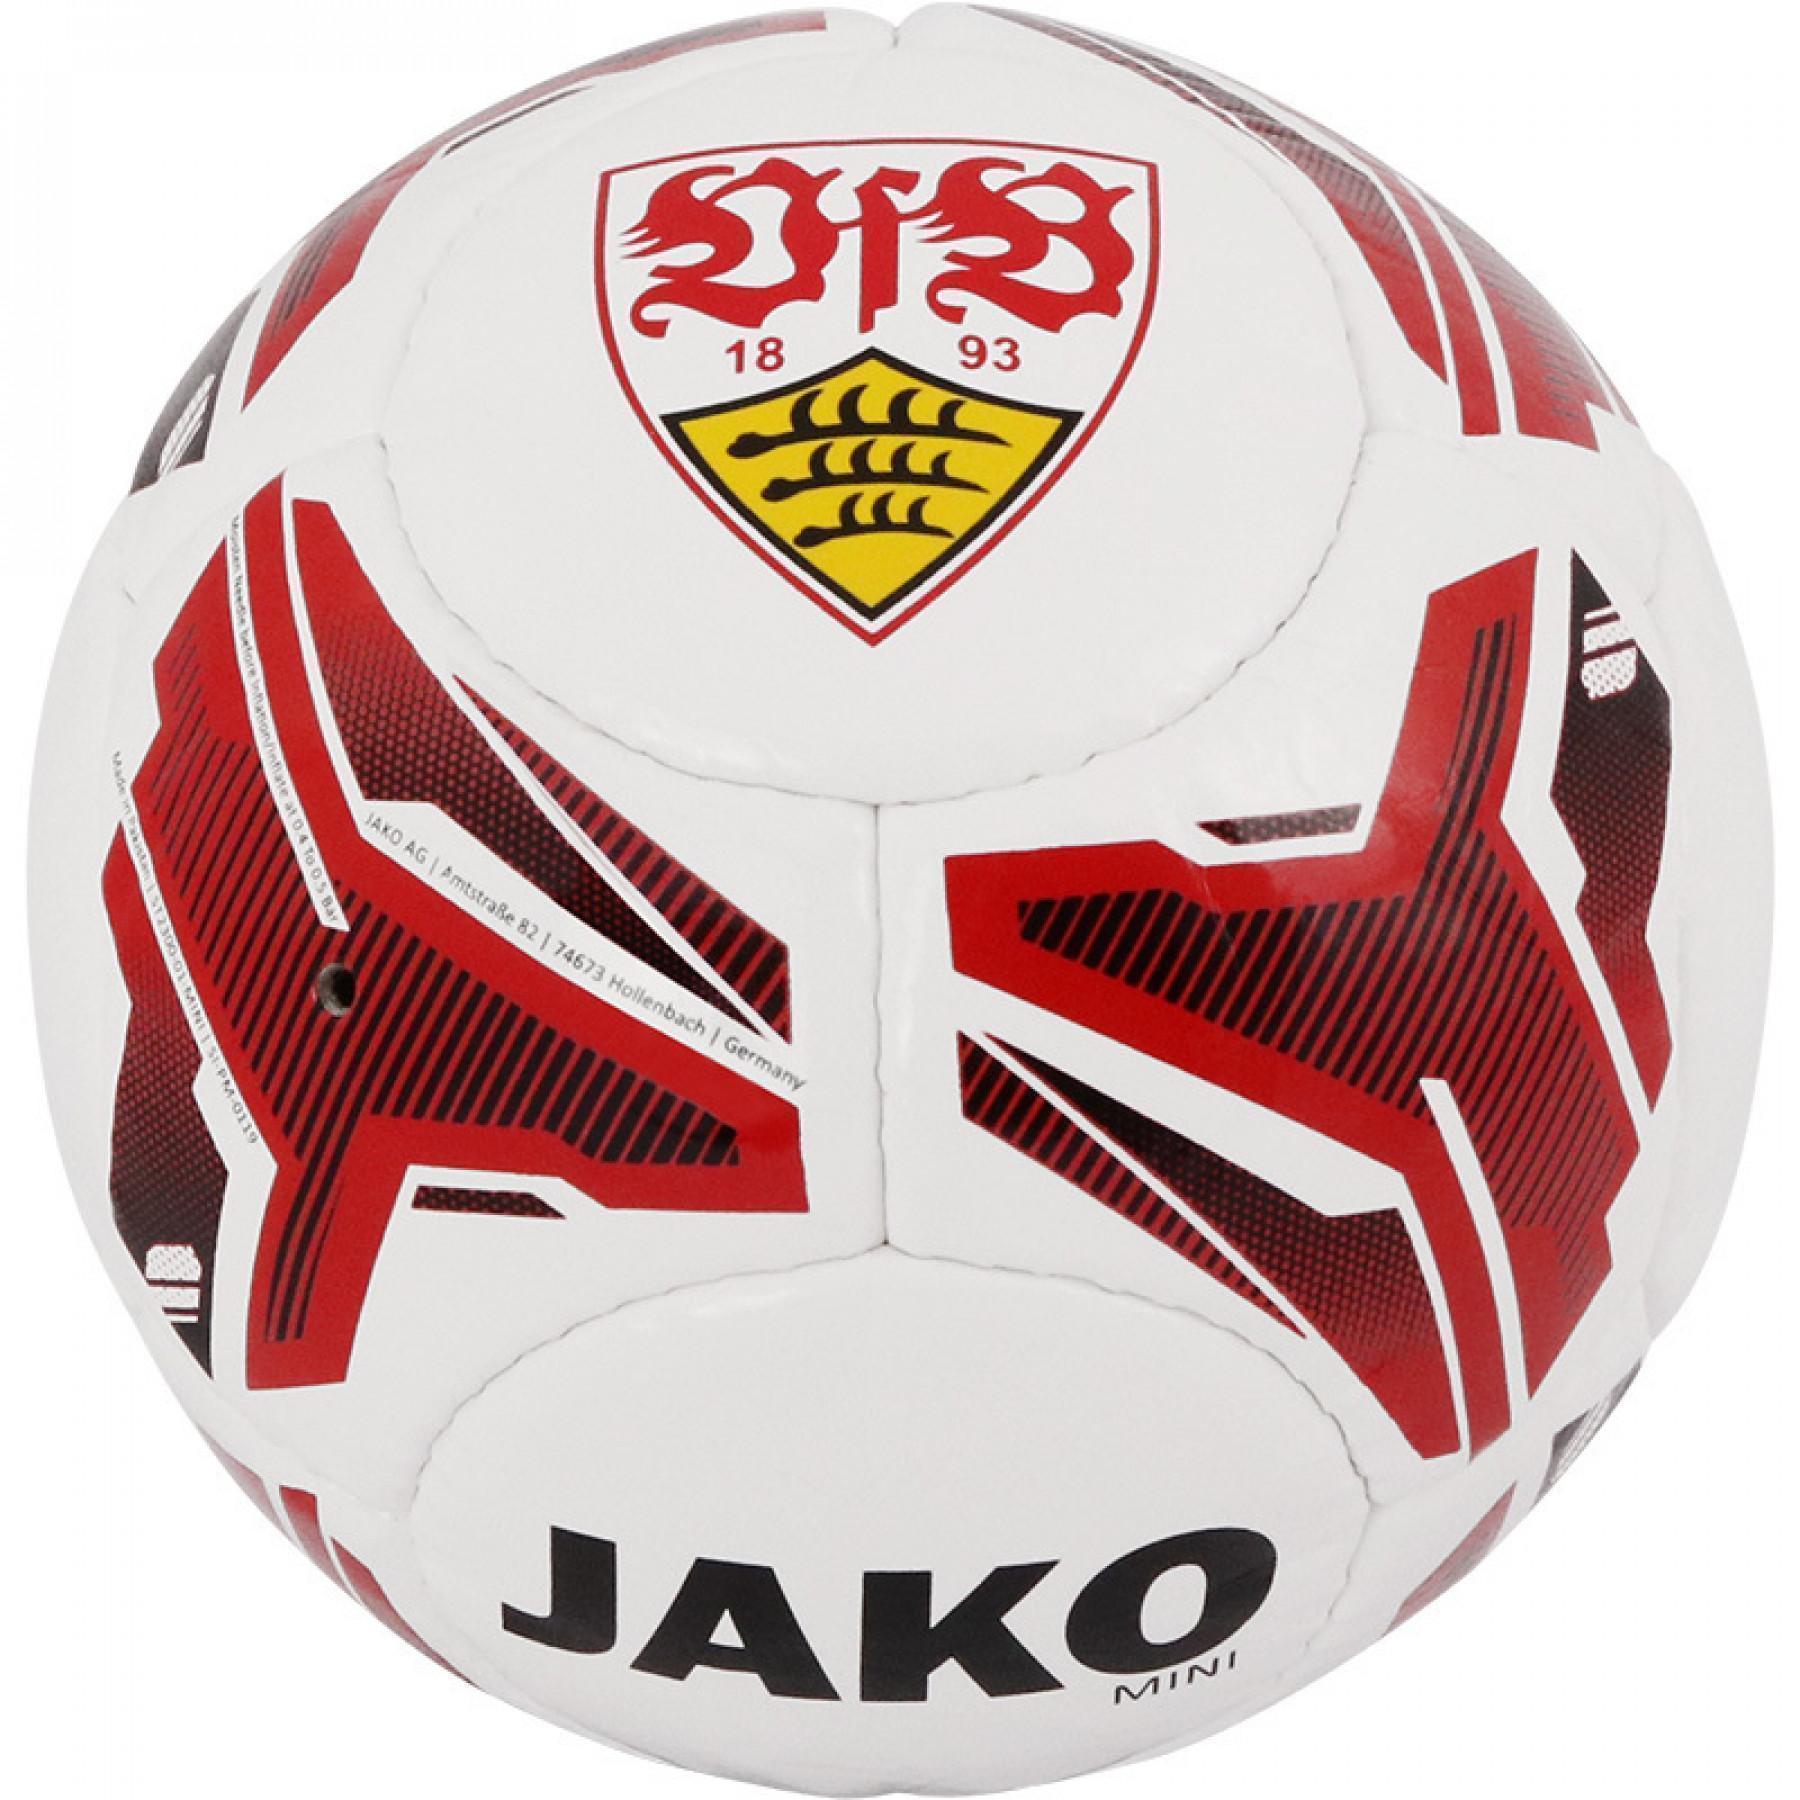 Balon VFB Stuttgart 2019/20